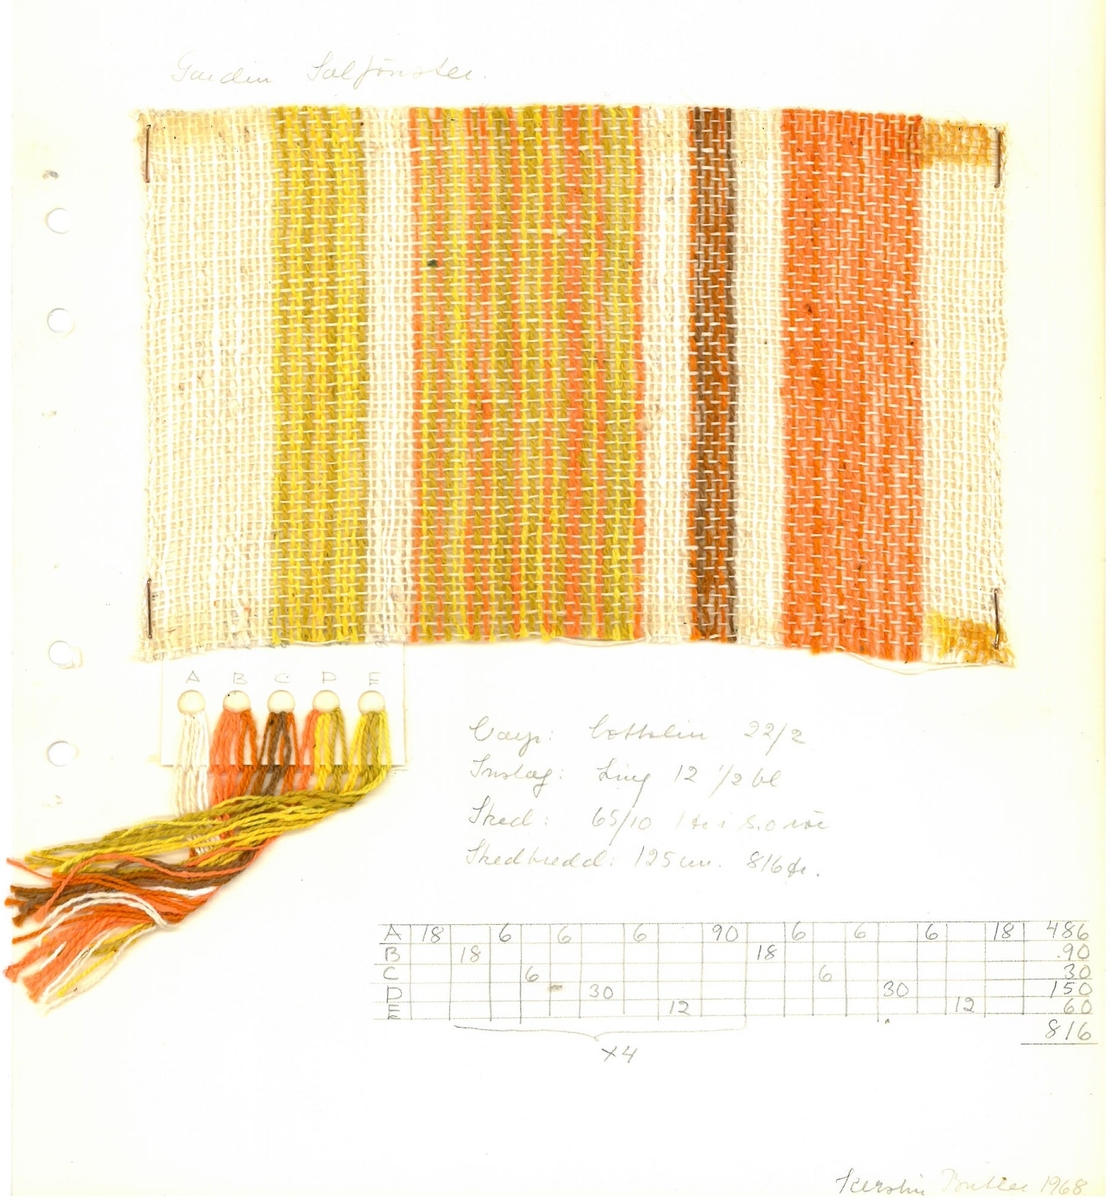 Pärm med vävprover till gardiner.
Gardin "Solfönster"
Formgivare:
Kerstin Butler 1961-1969